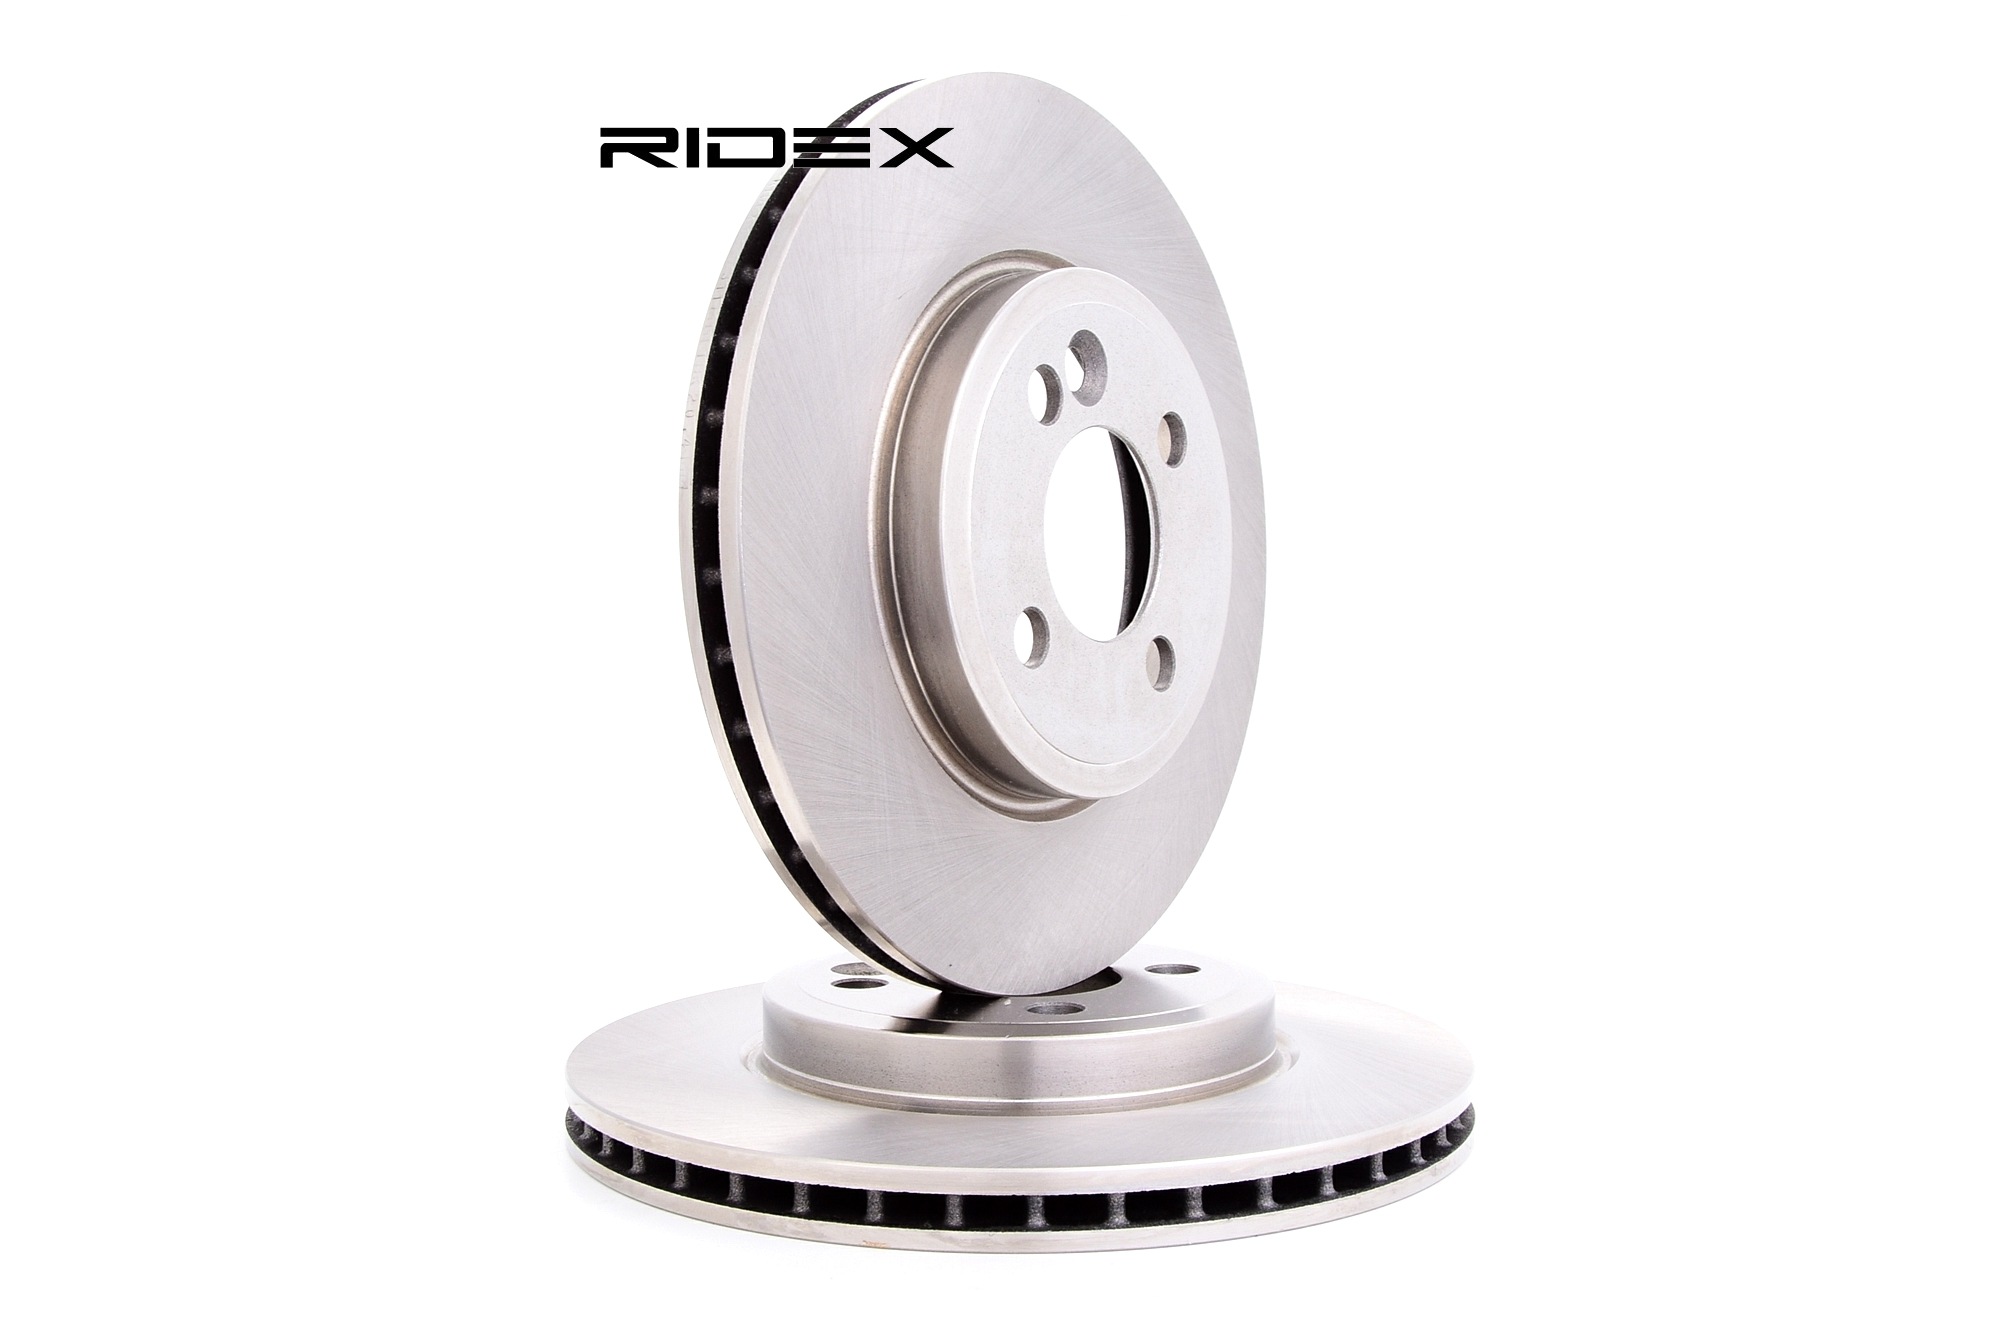 RIDEX 82B0311 originali MINI Kit dischi freno ventilato, senza viti/bulloni